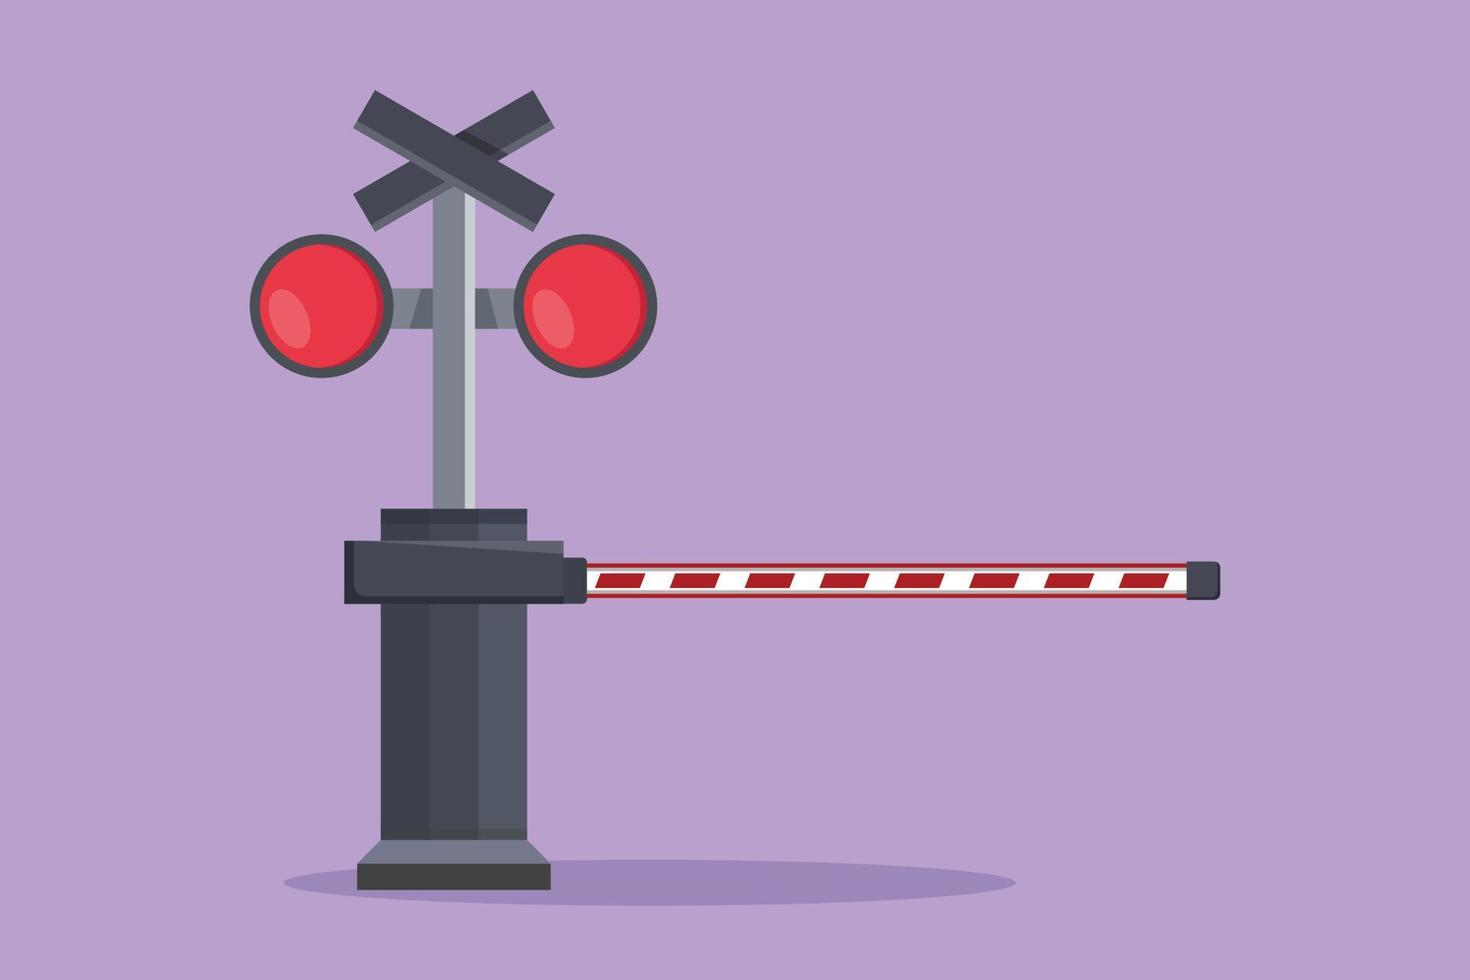 Cartoon Flat Style Zeichnung automatische Eisenbahnsperre mit Sirene, Streifen, Schildern und Warnlichtern schließt Bahnübergänge, um zu verhindern, dass Fahrzeuge einfahren. Grafik-Draw-Design-Vektor-Illustration vektor